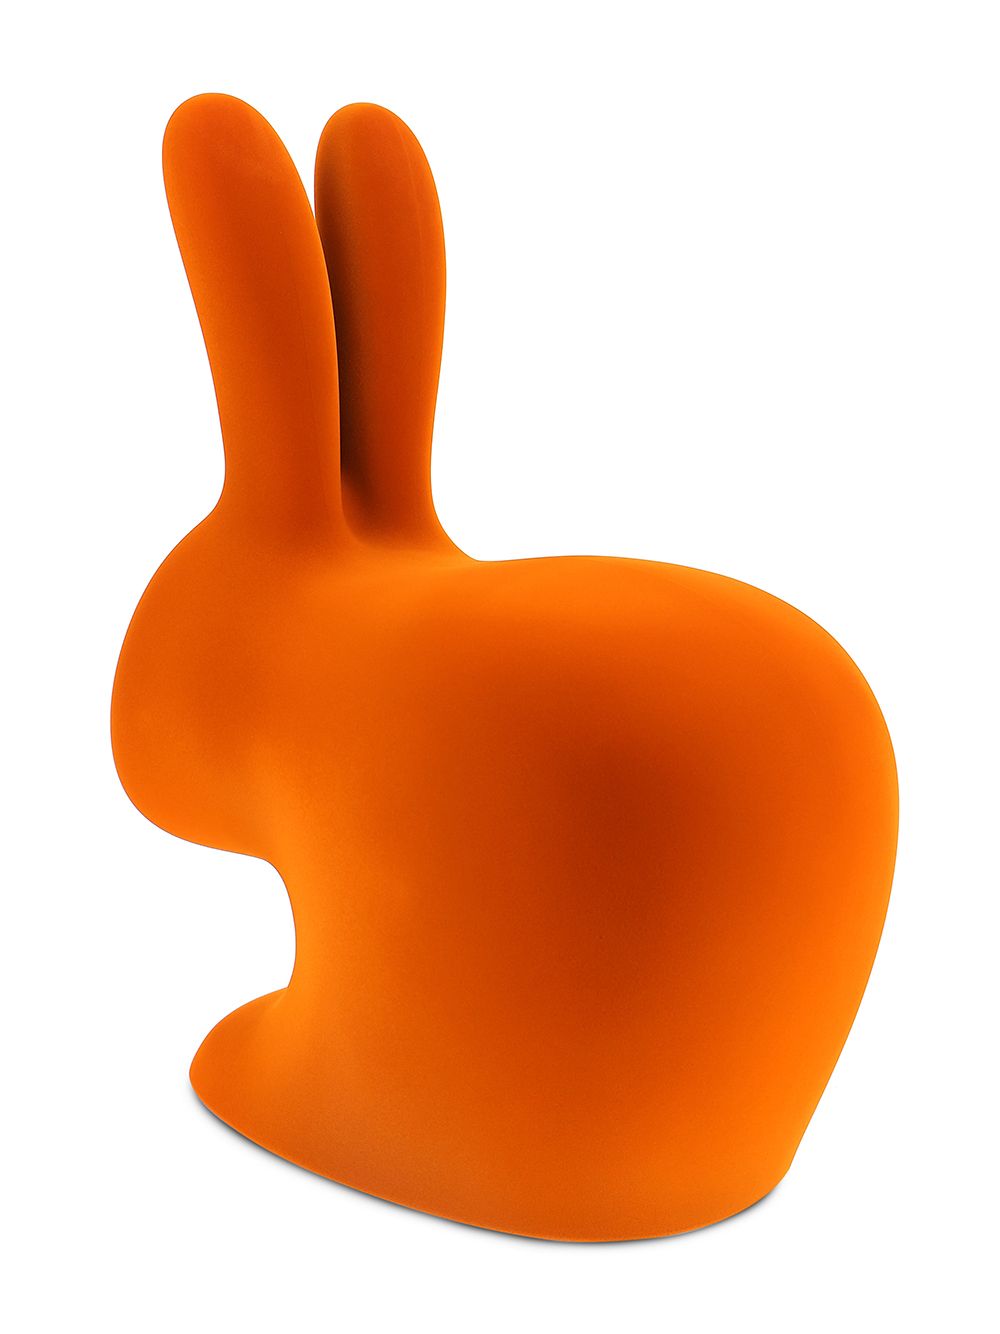 Qeeboo konijnstoel met fluwelen detail - Oranje